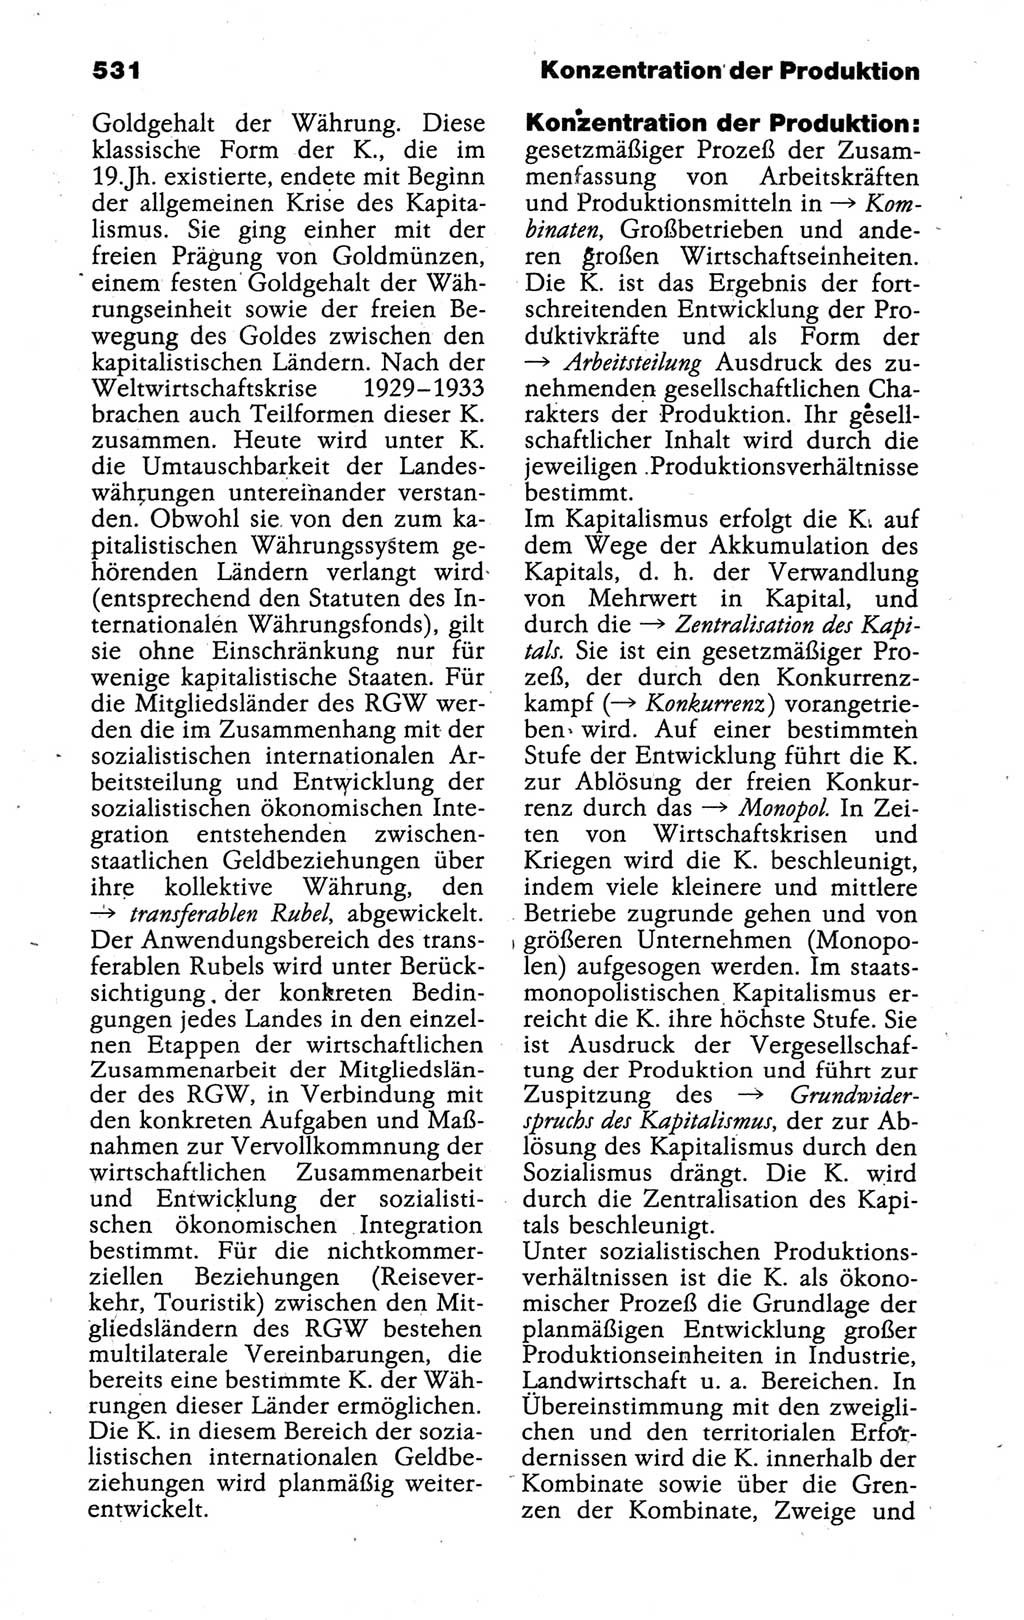 Kleines politisches Wörterbuch [Deutsche Demokratische Republik (DDR)] 1988, Seite 531 (Kl. pol. Wb. DDR 1988, S. 531)